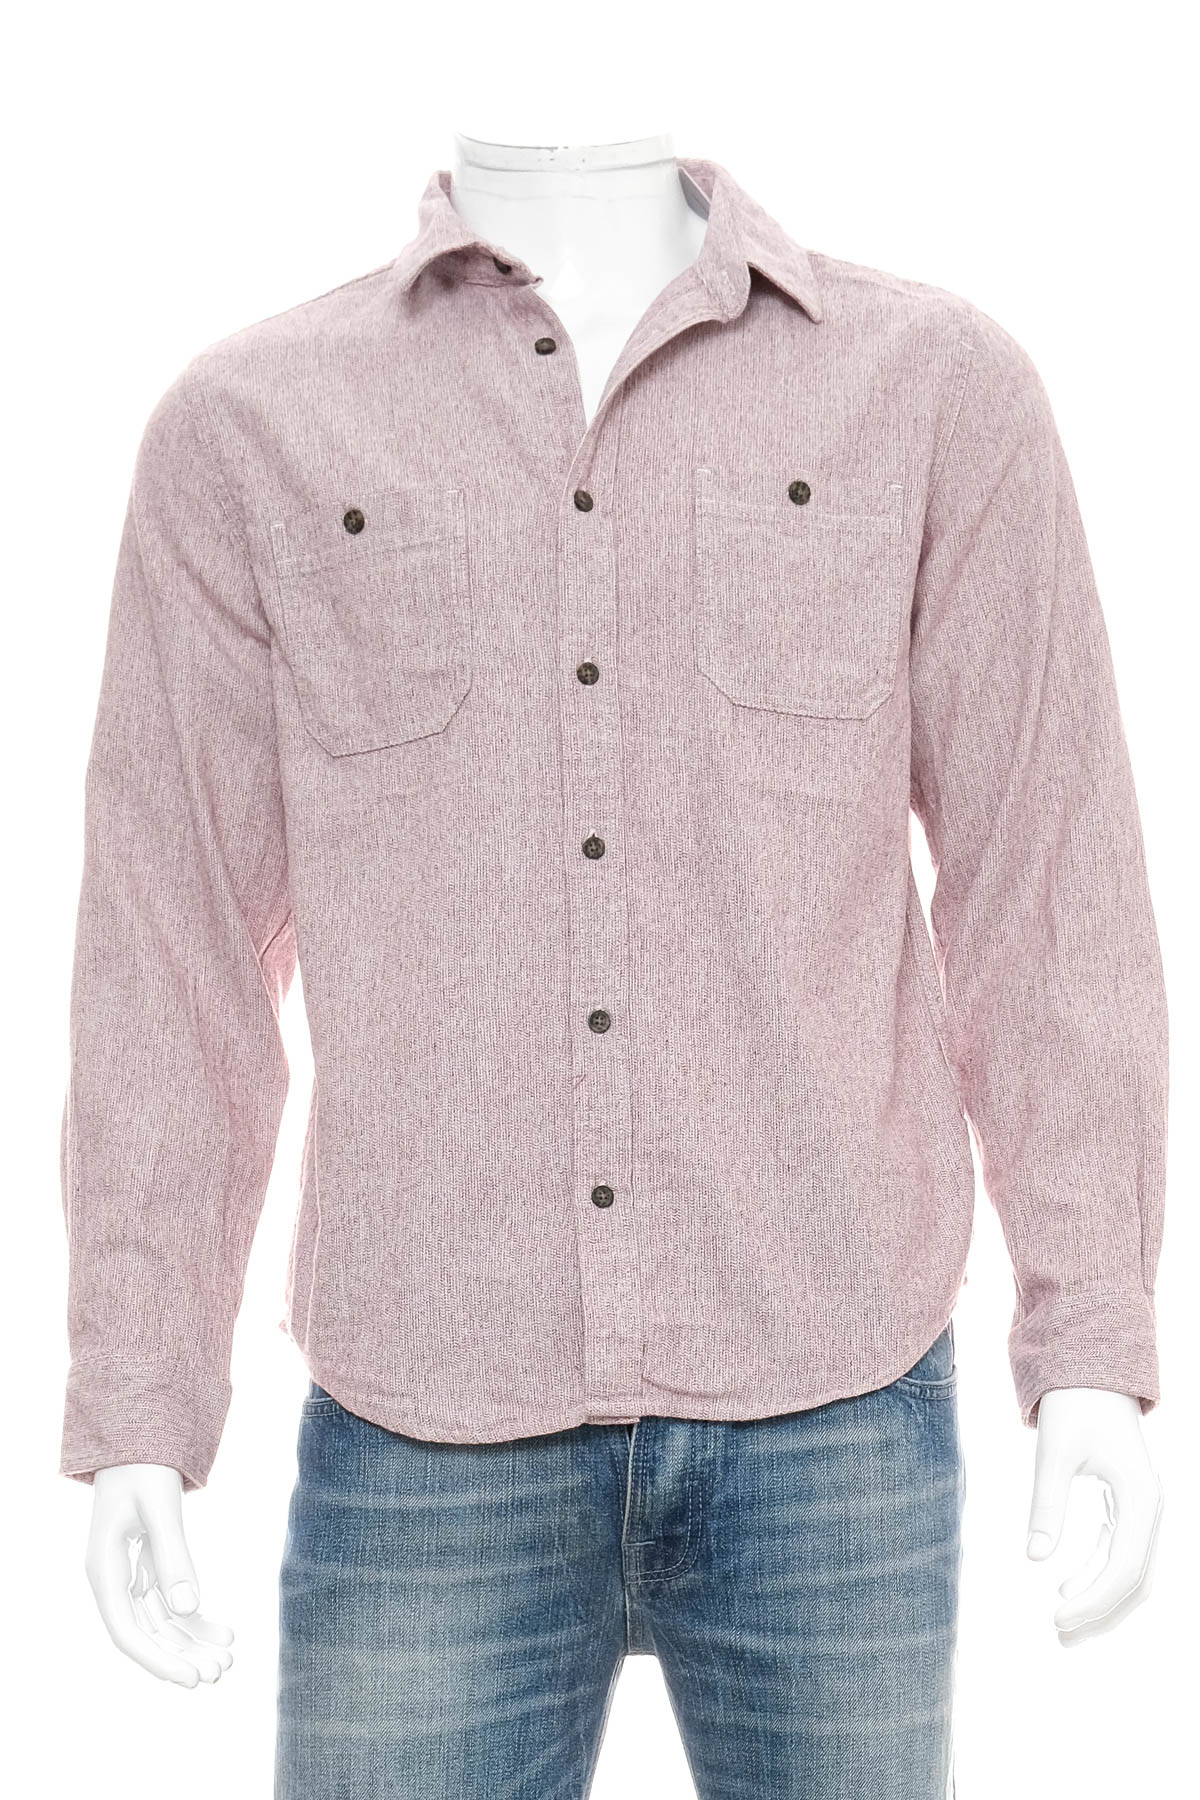 Ανδρικό πουκάμισο - Goodfellow & Co - 0